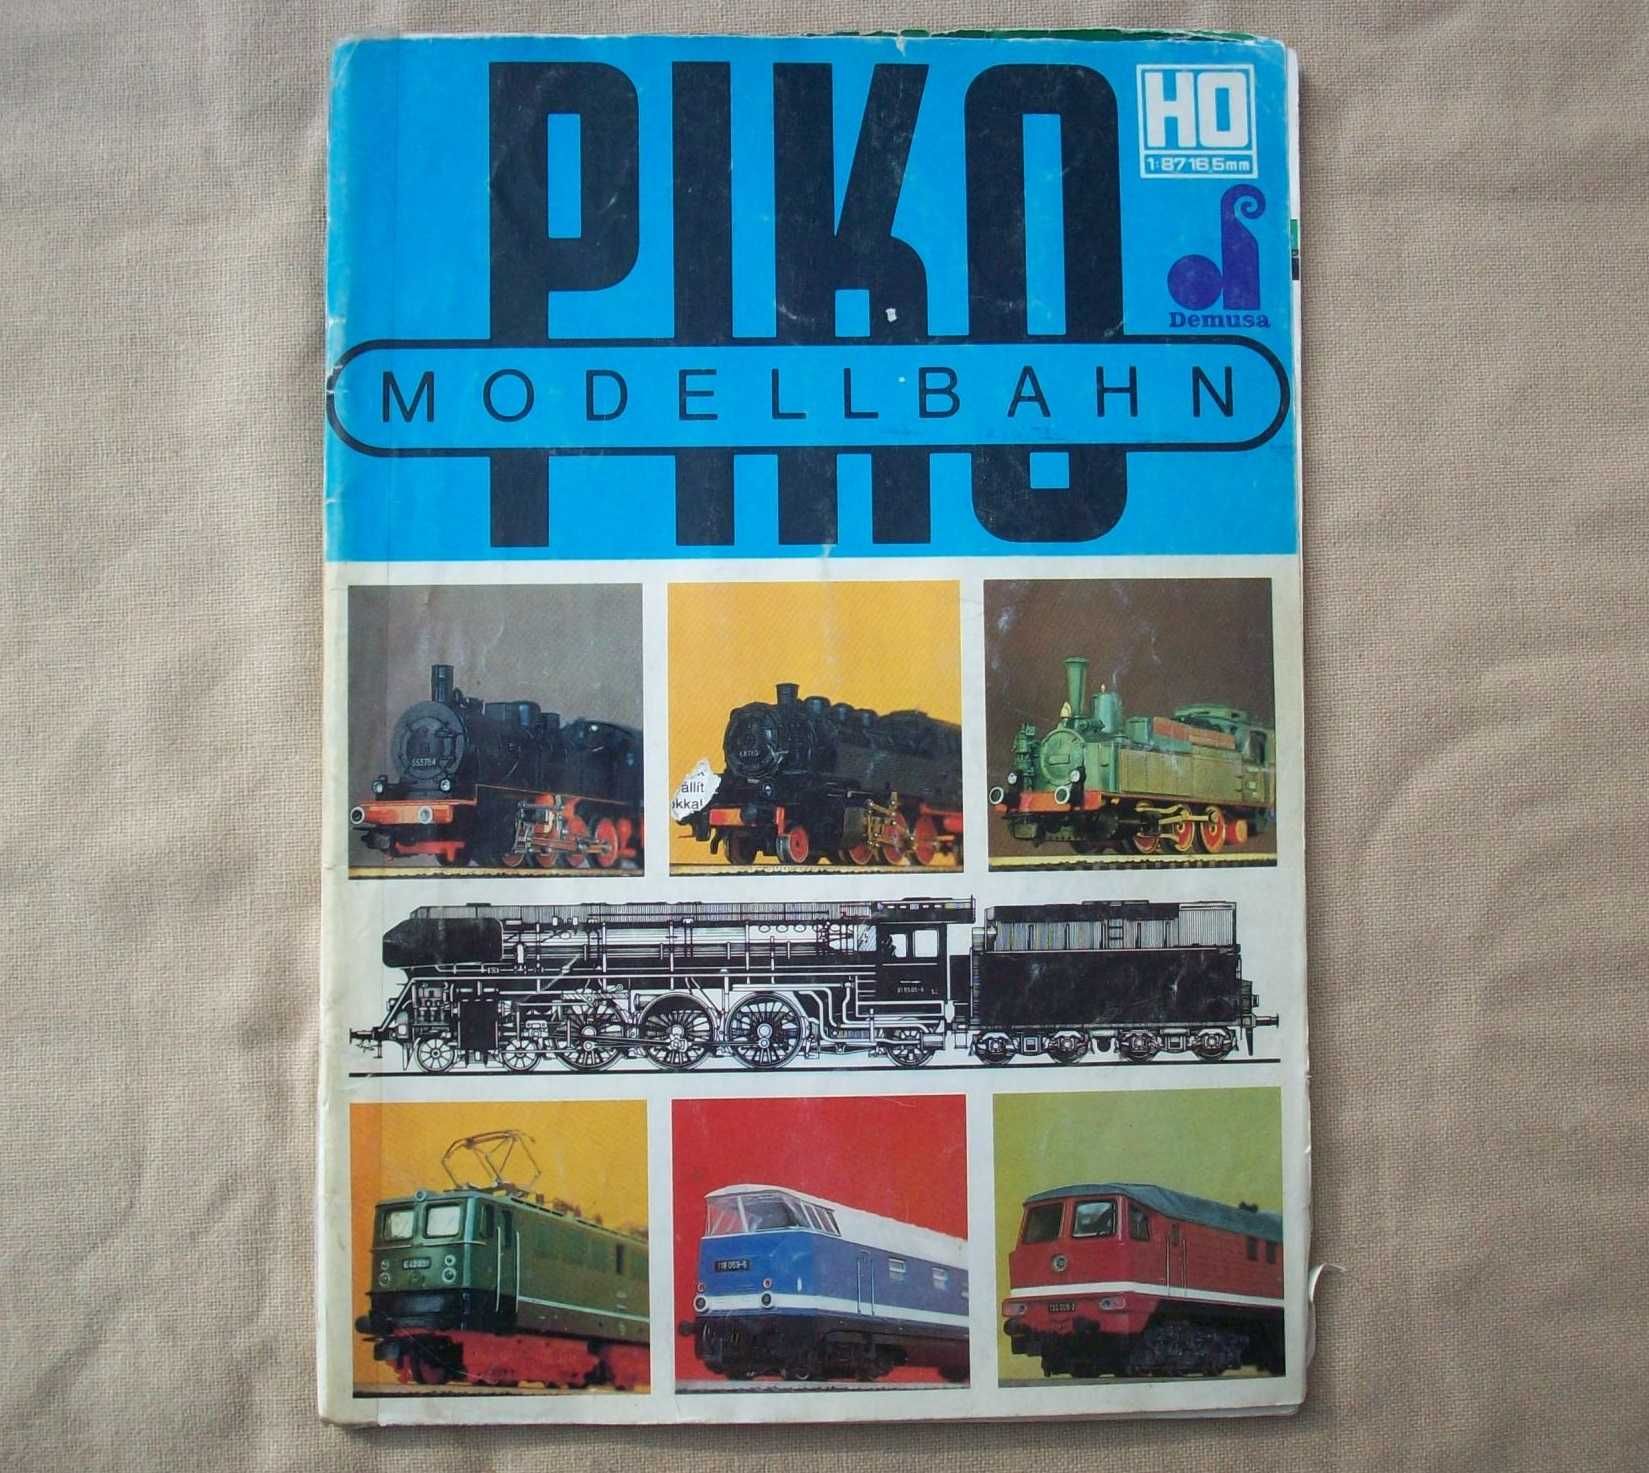 PIKO HO Modellbahn katalog, stary, używany, podniszczony.